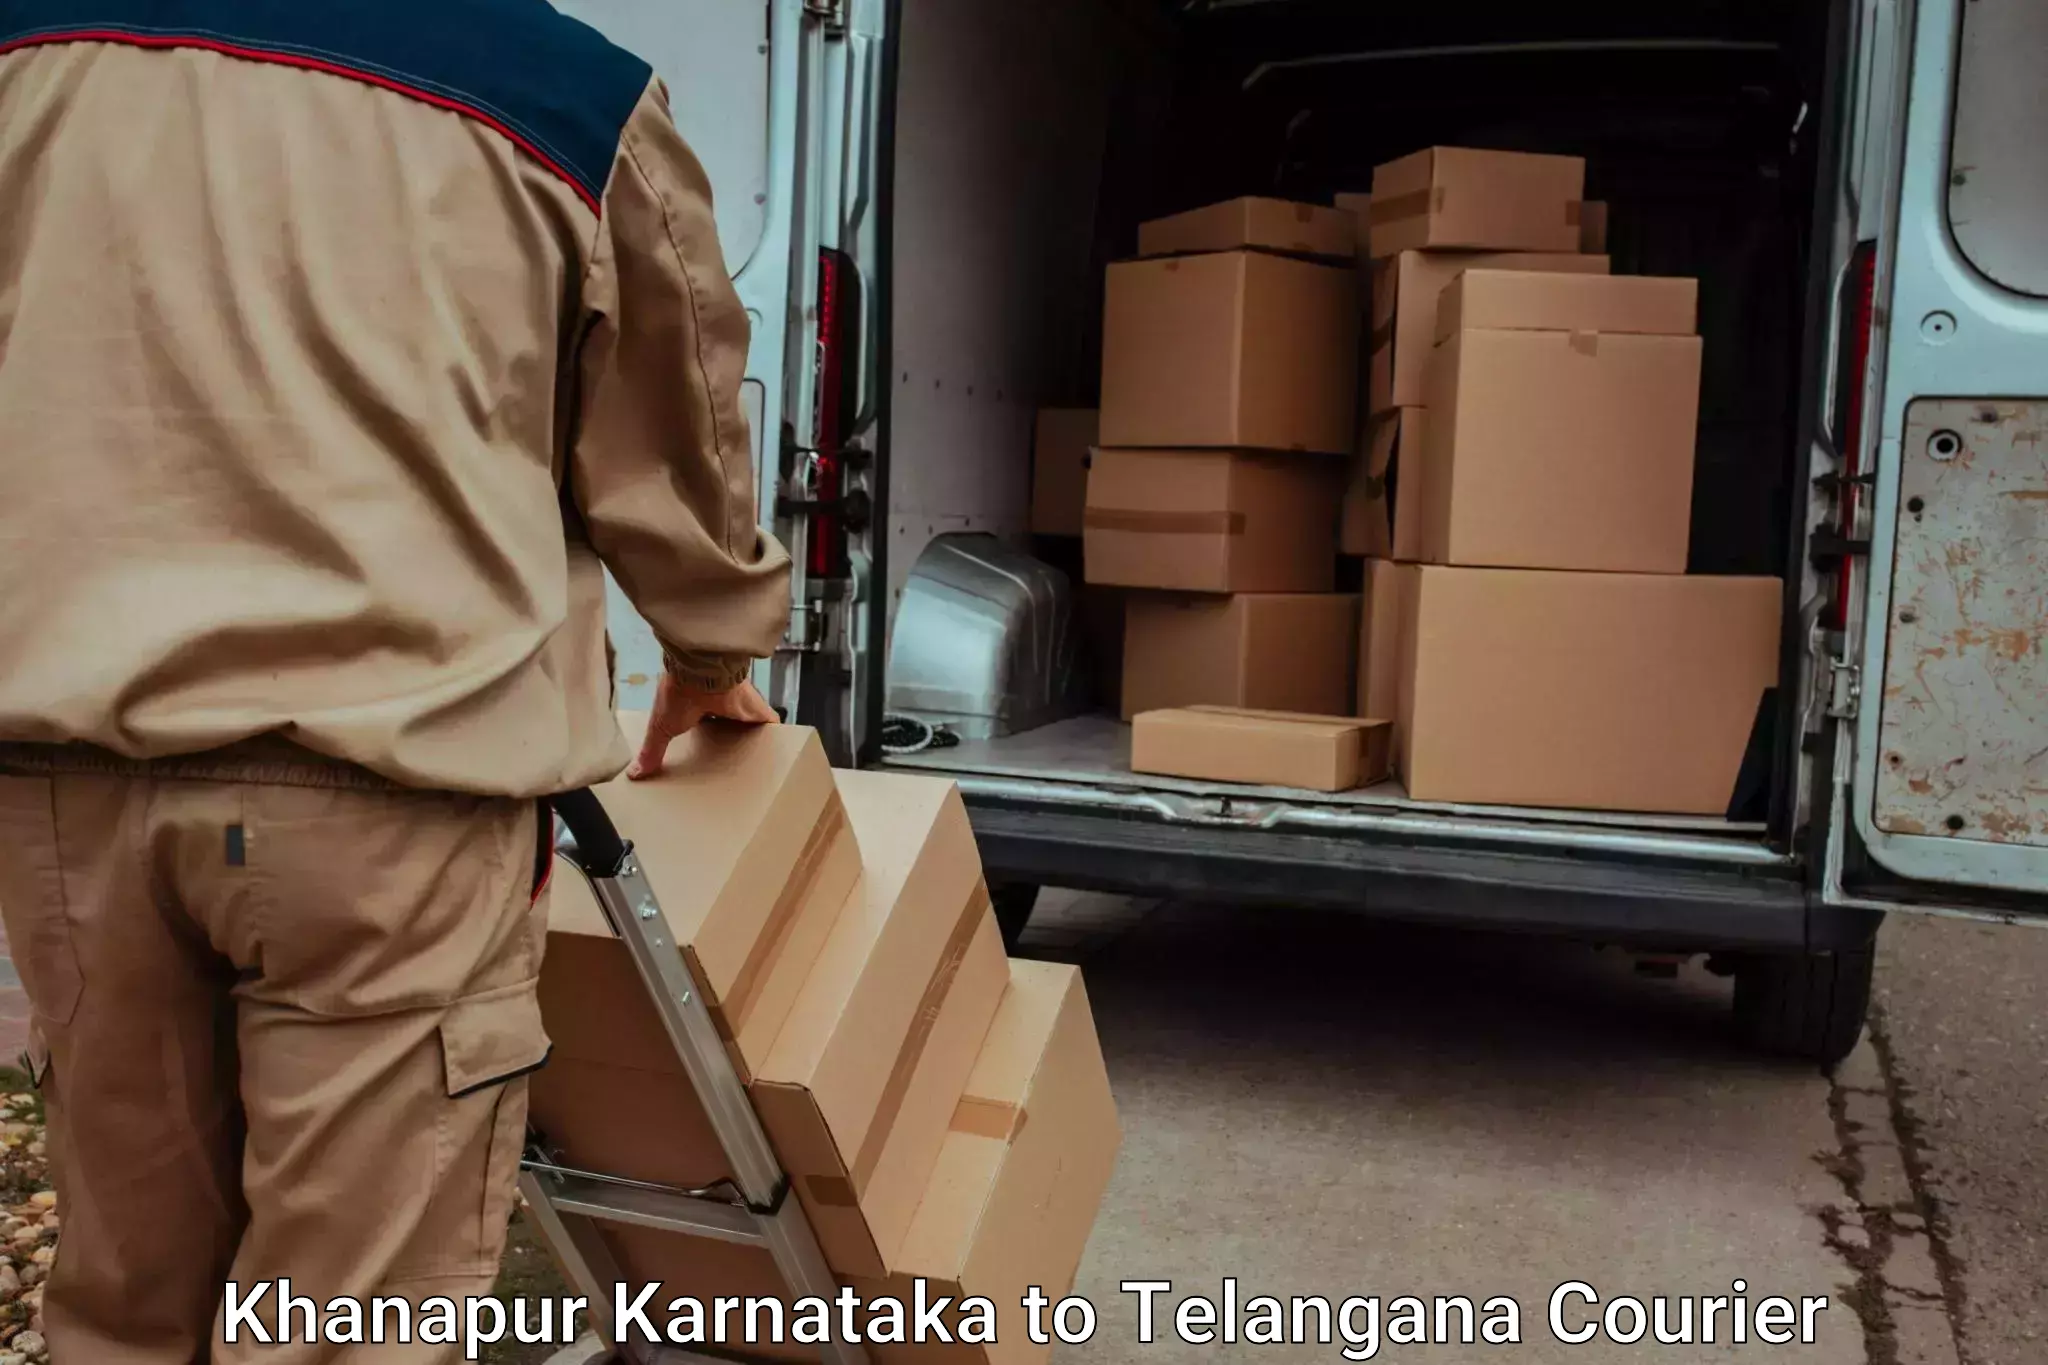 Baggage shipping experts Khanapur Karnataka to Manthani